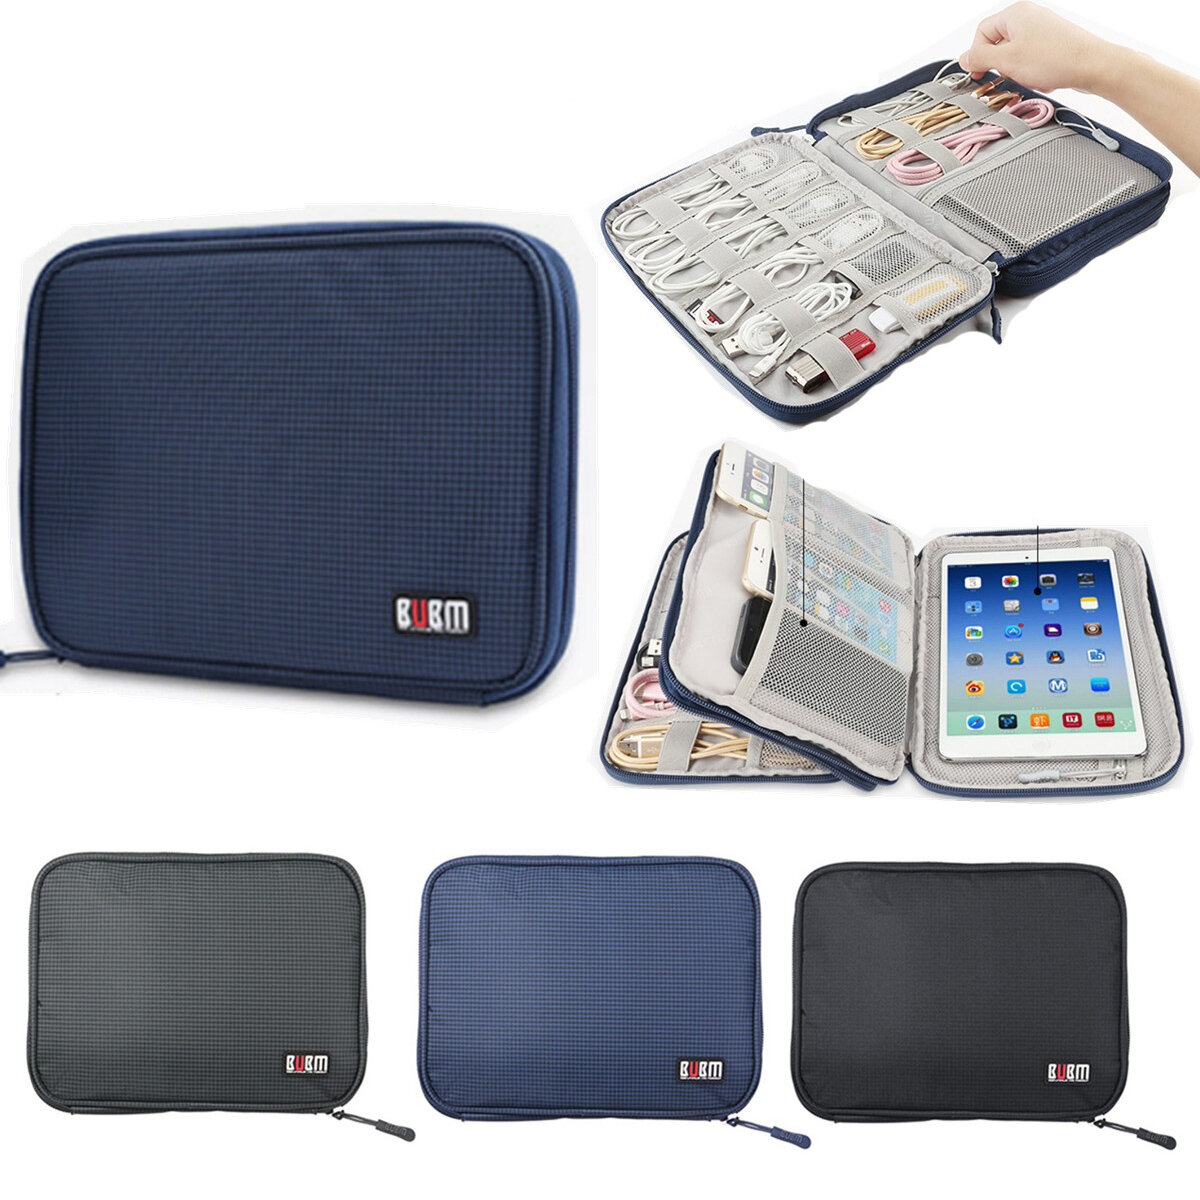 BUBM Portable Travel Grote capaciteit Kijk Tablet Oortelefoon U Schijfkabel Digitale apparaten Organ